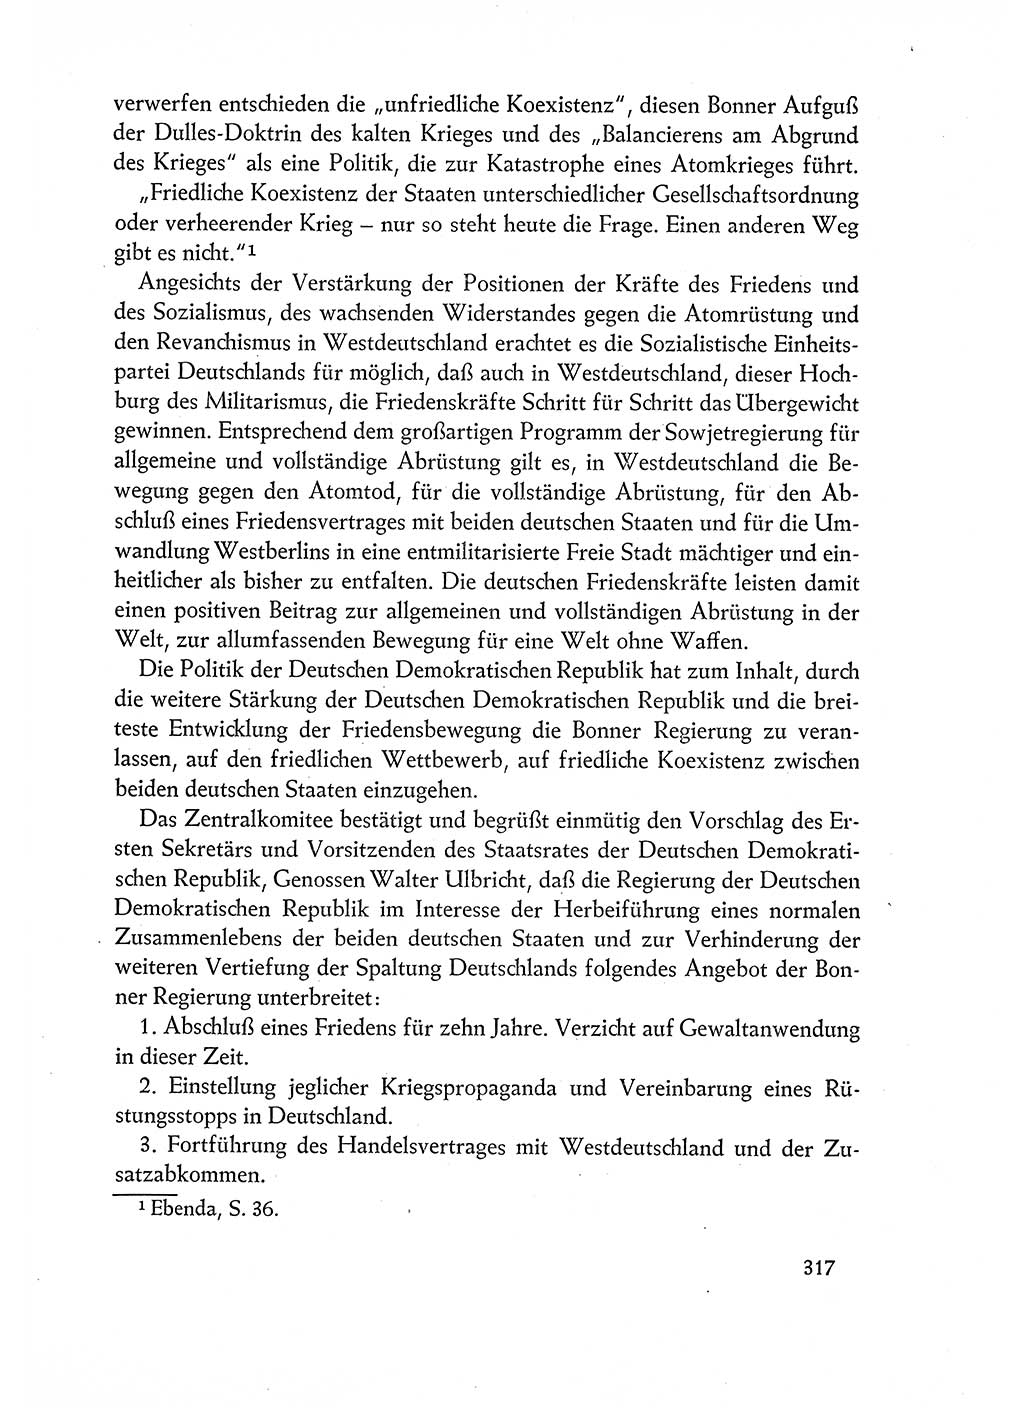 Dokumente der Sozialistischen Einheitspartei Deutschlands (SED) [Deutsche Demokratische Republik (DDR)] 1960-1961, Seite 317 (Dok. SED DDR 1960-1961, S. 317)